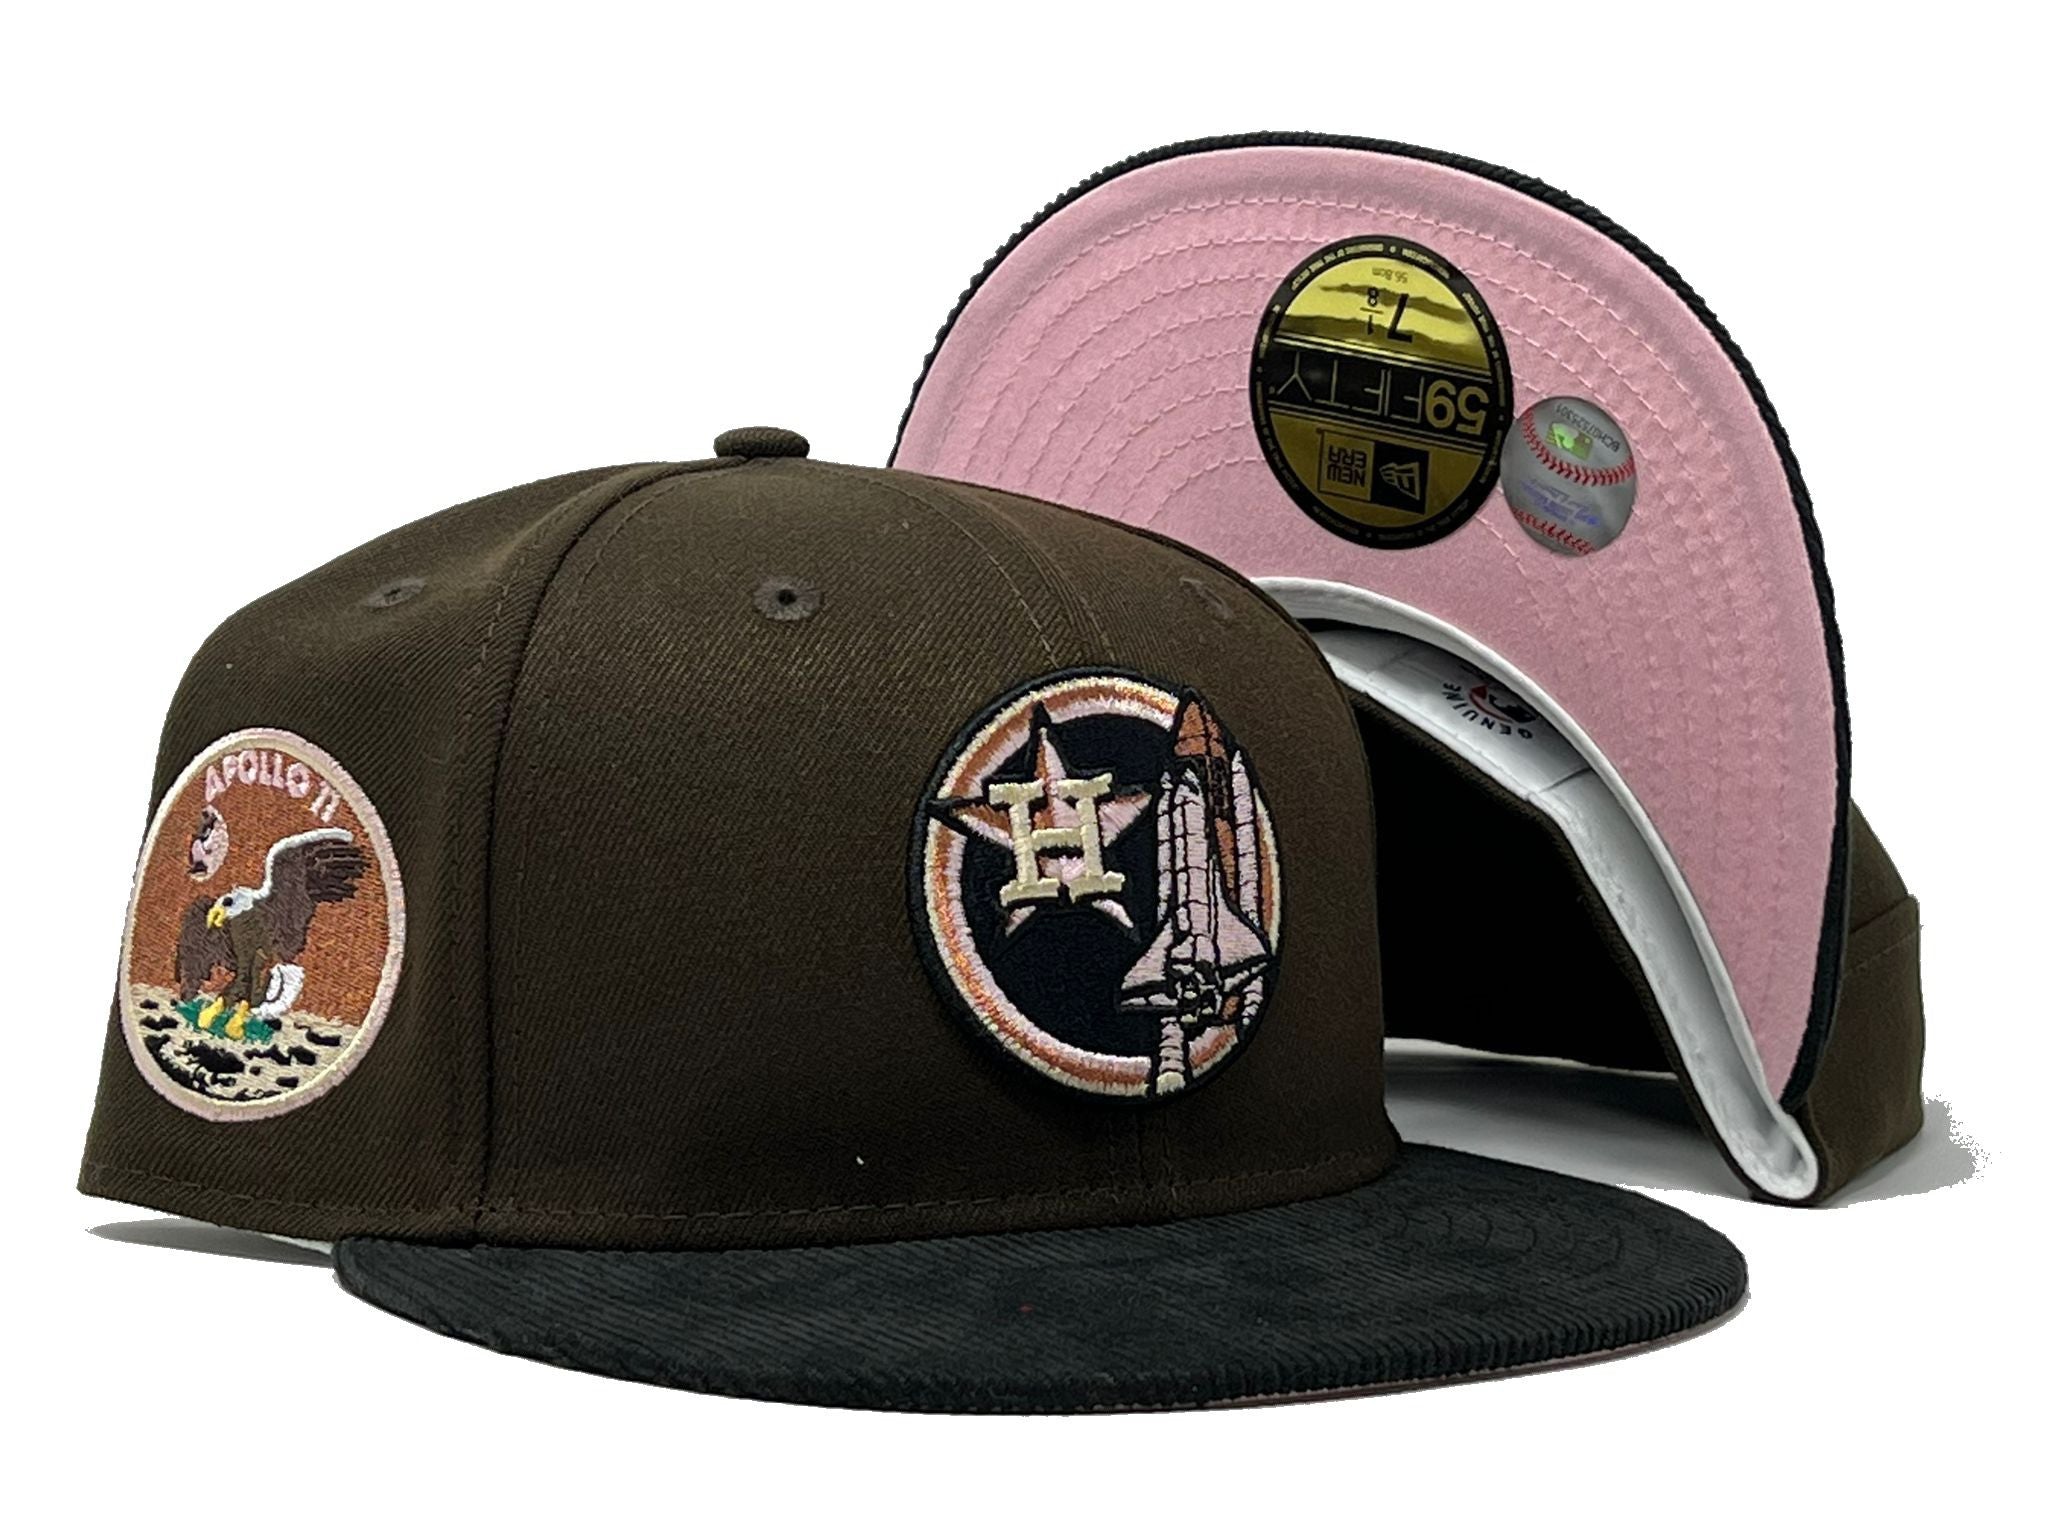 Exclusive New Era Houston Astros Hat MLB Club Size 7 1/4 Apollo 11 Brown